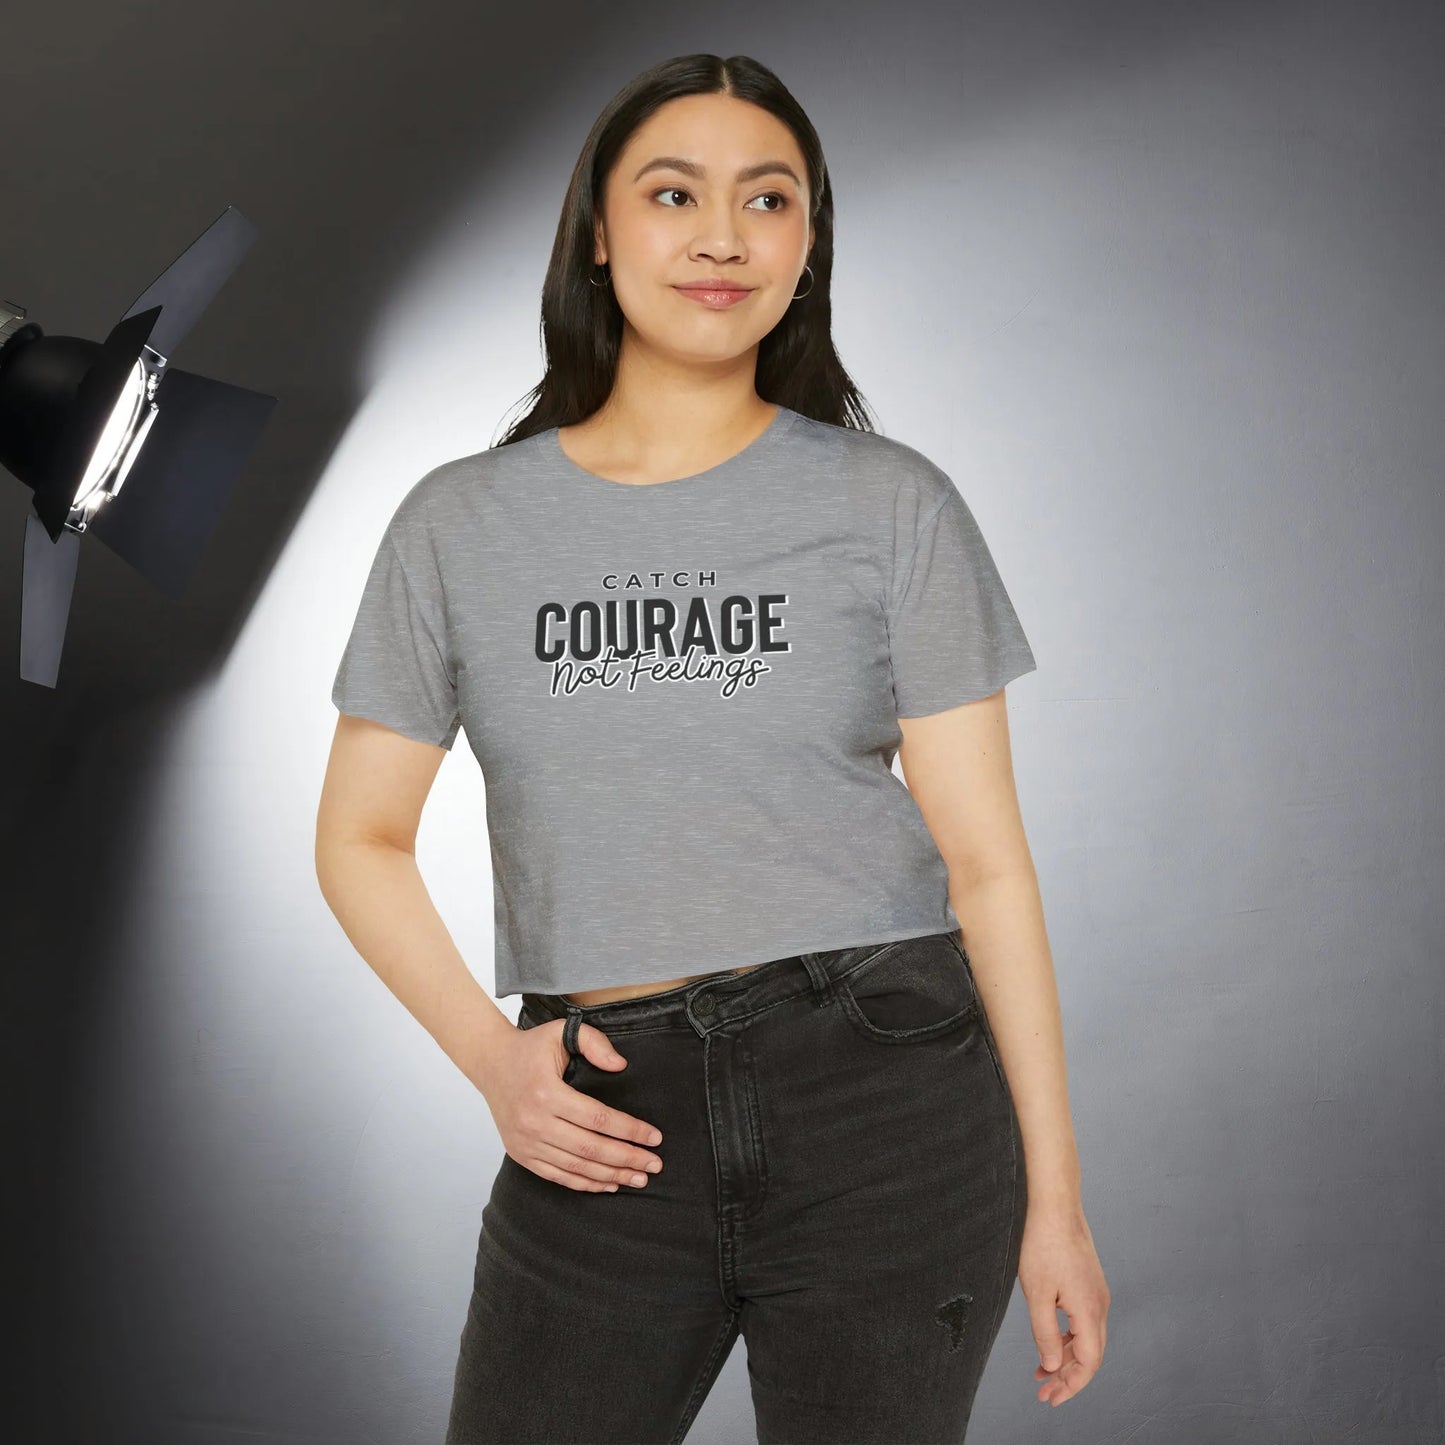 Catch Courage Not Feelings Crop Top - Trendy Women's Top Heather Grey